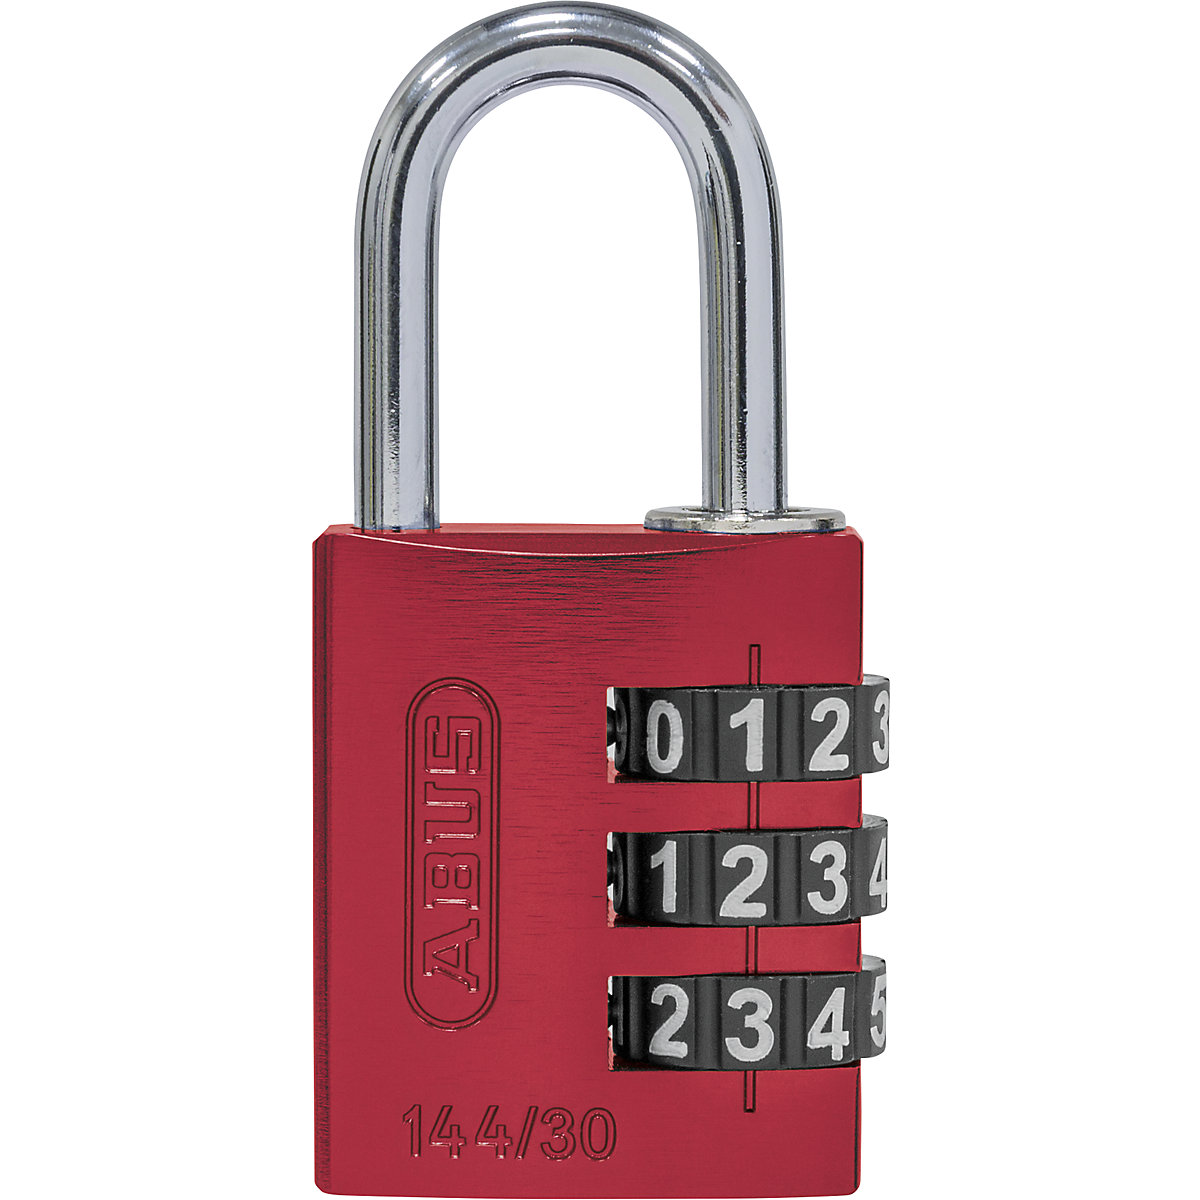 Cijferslot, aluminium – ABUS, 144/30 lock-tag, VE = 6 stuks, rood-6